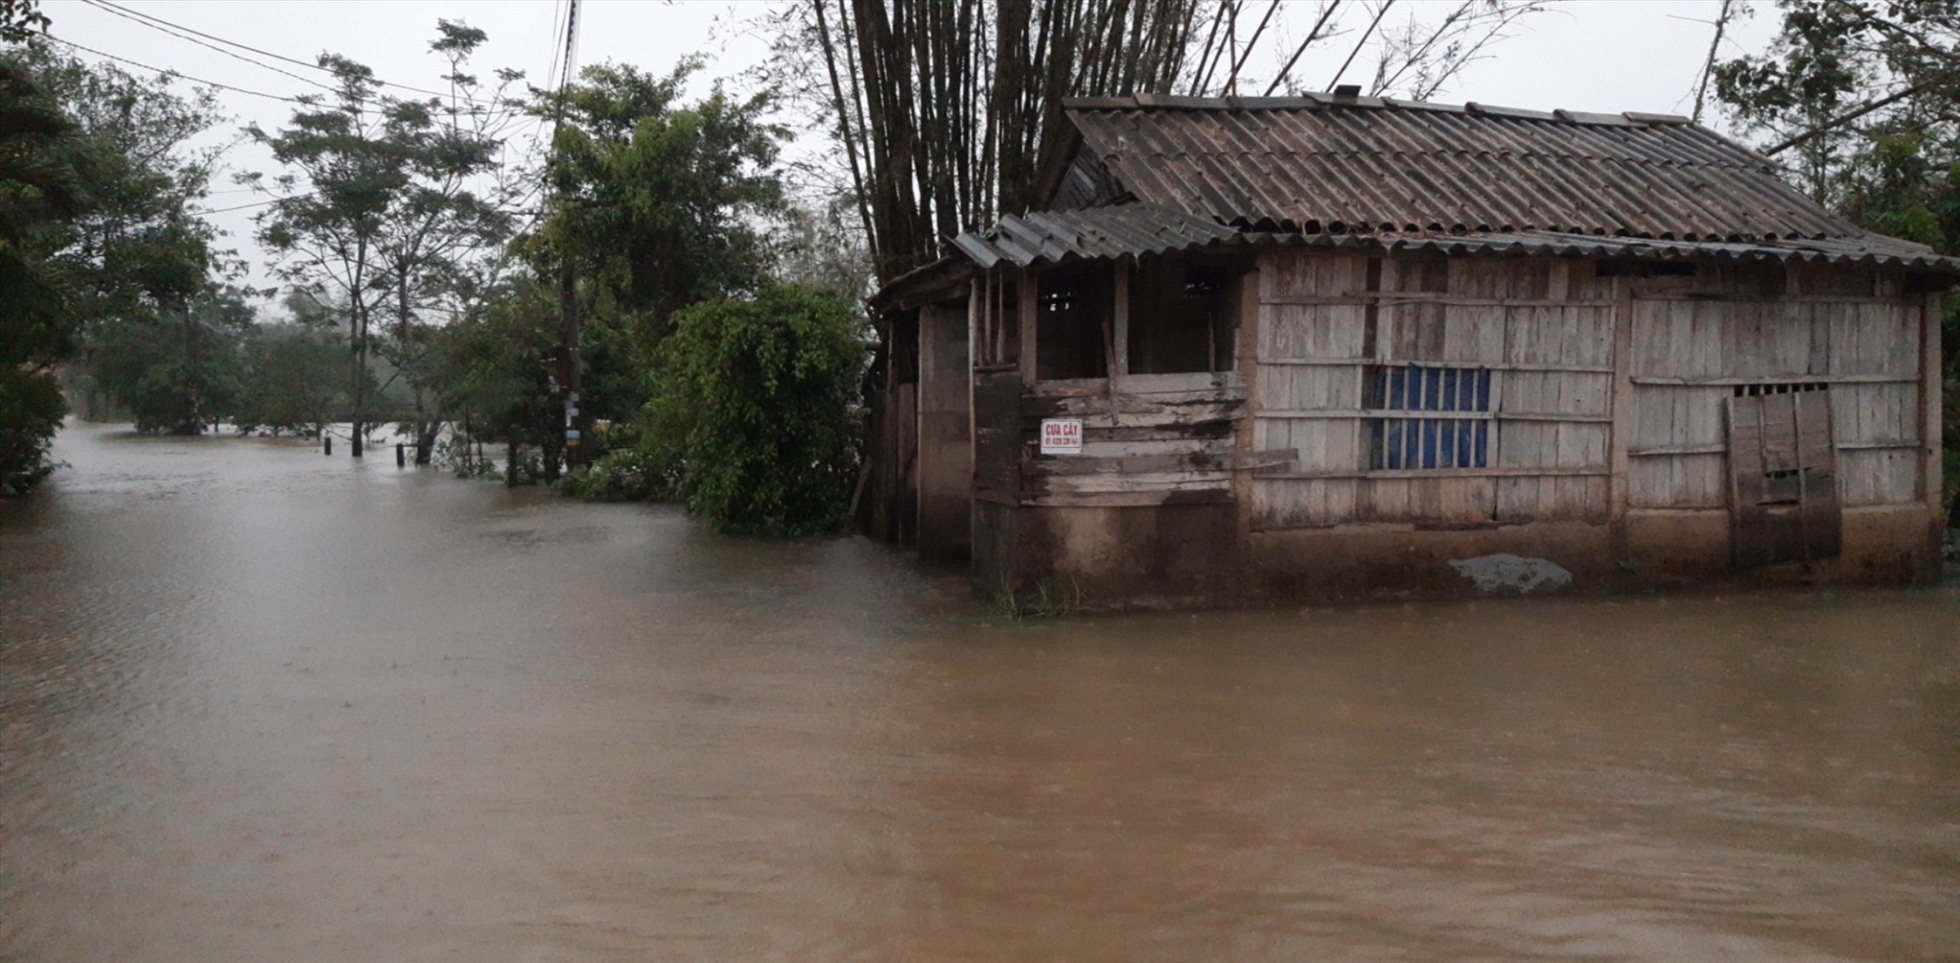 Lượng mưa lớn những ngày qua kèm theo việc thủy điện điều tiết nước đã khiến cho nhiều địa phương vùng thấp trũng ngập lụt. Ảnh: Tuấn Hiệp.